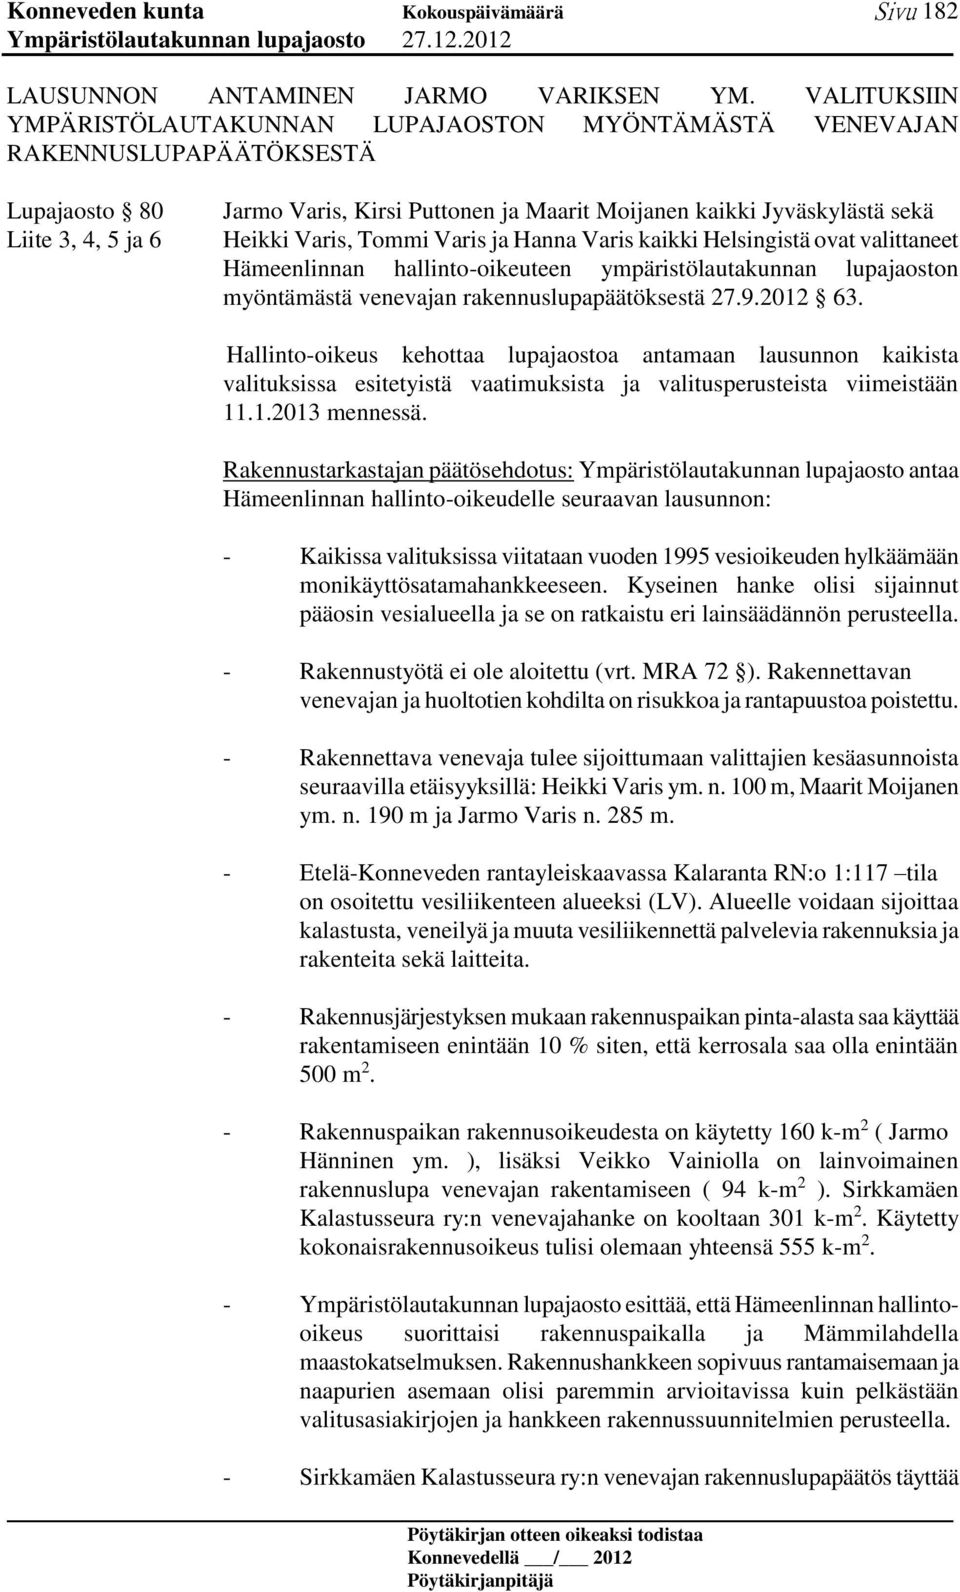 Heikki Varis, Tommi Varis ja Hanna Varis kaikki Helsingistä ovat valittaneet Hämeenlinnan hallinto-oikeuteen ympäristölautakunnan lupajaoston myöntämästä venevajan rakennuslupapäätöksestä 27.9.